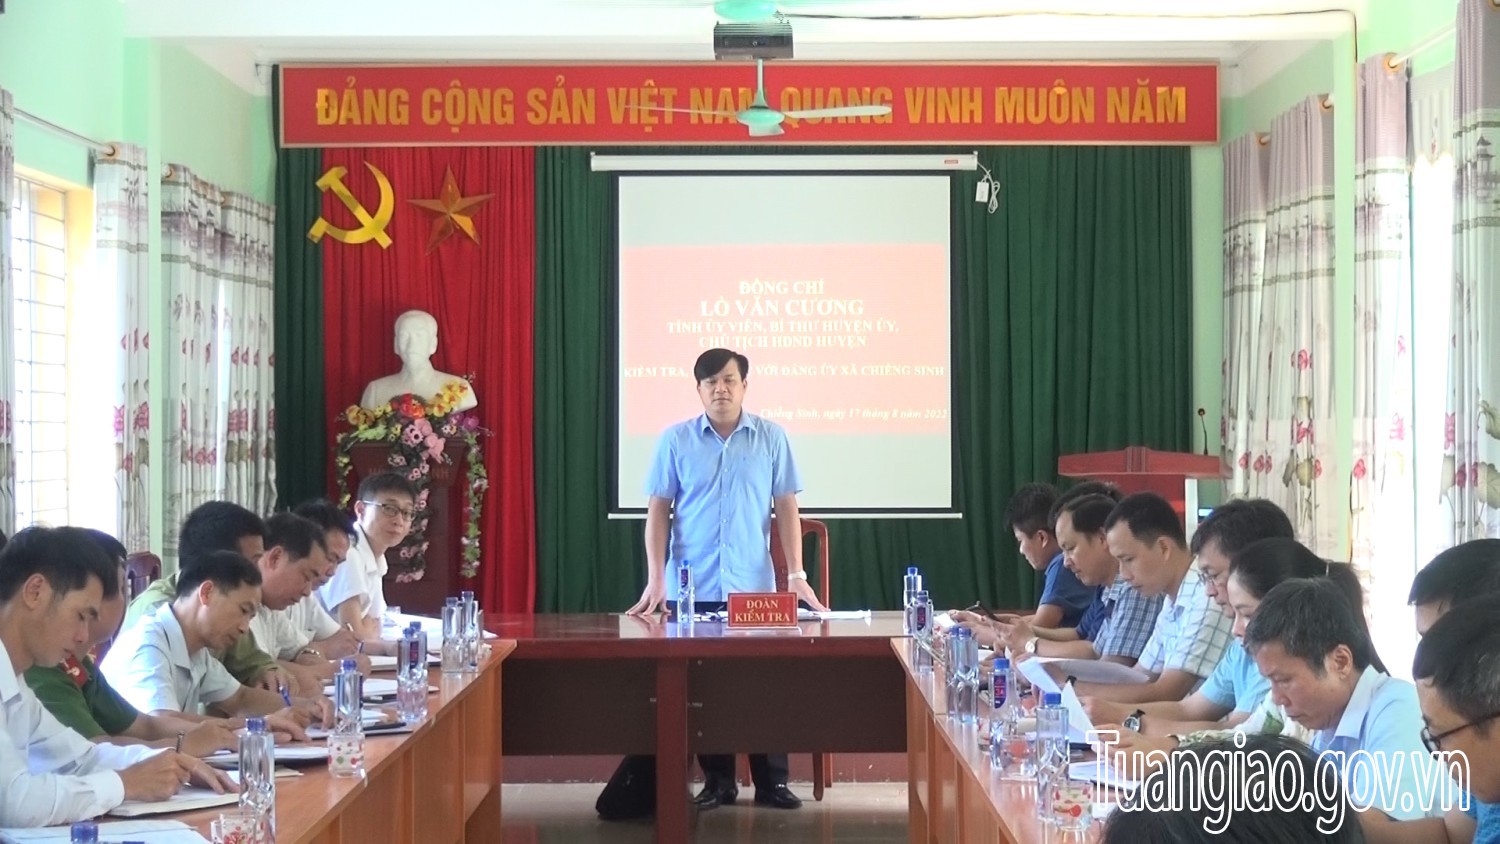 Đồng chí Lò Văn Cương kiểm tra, làm việc với Đảng uỷ xã Chiềng Sinh